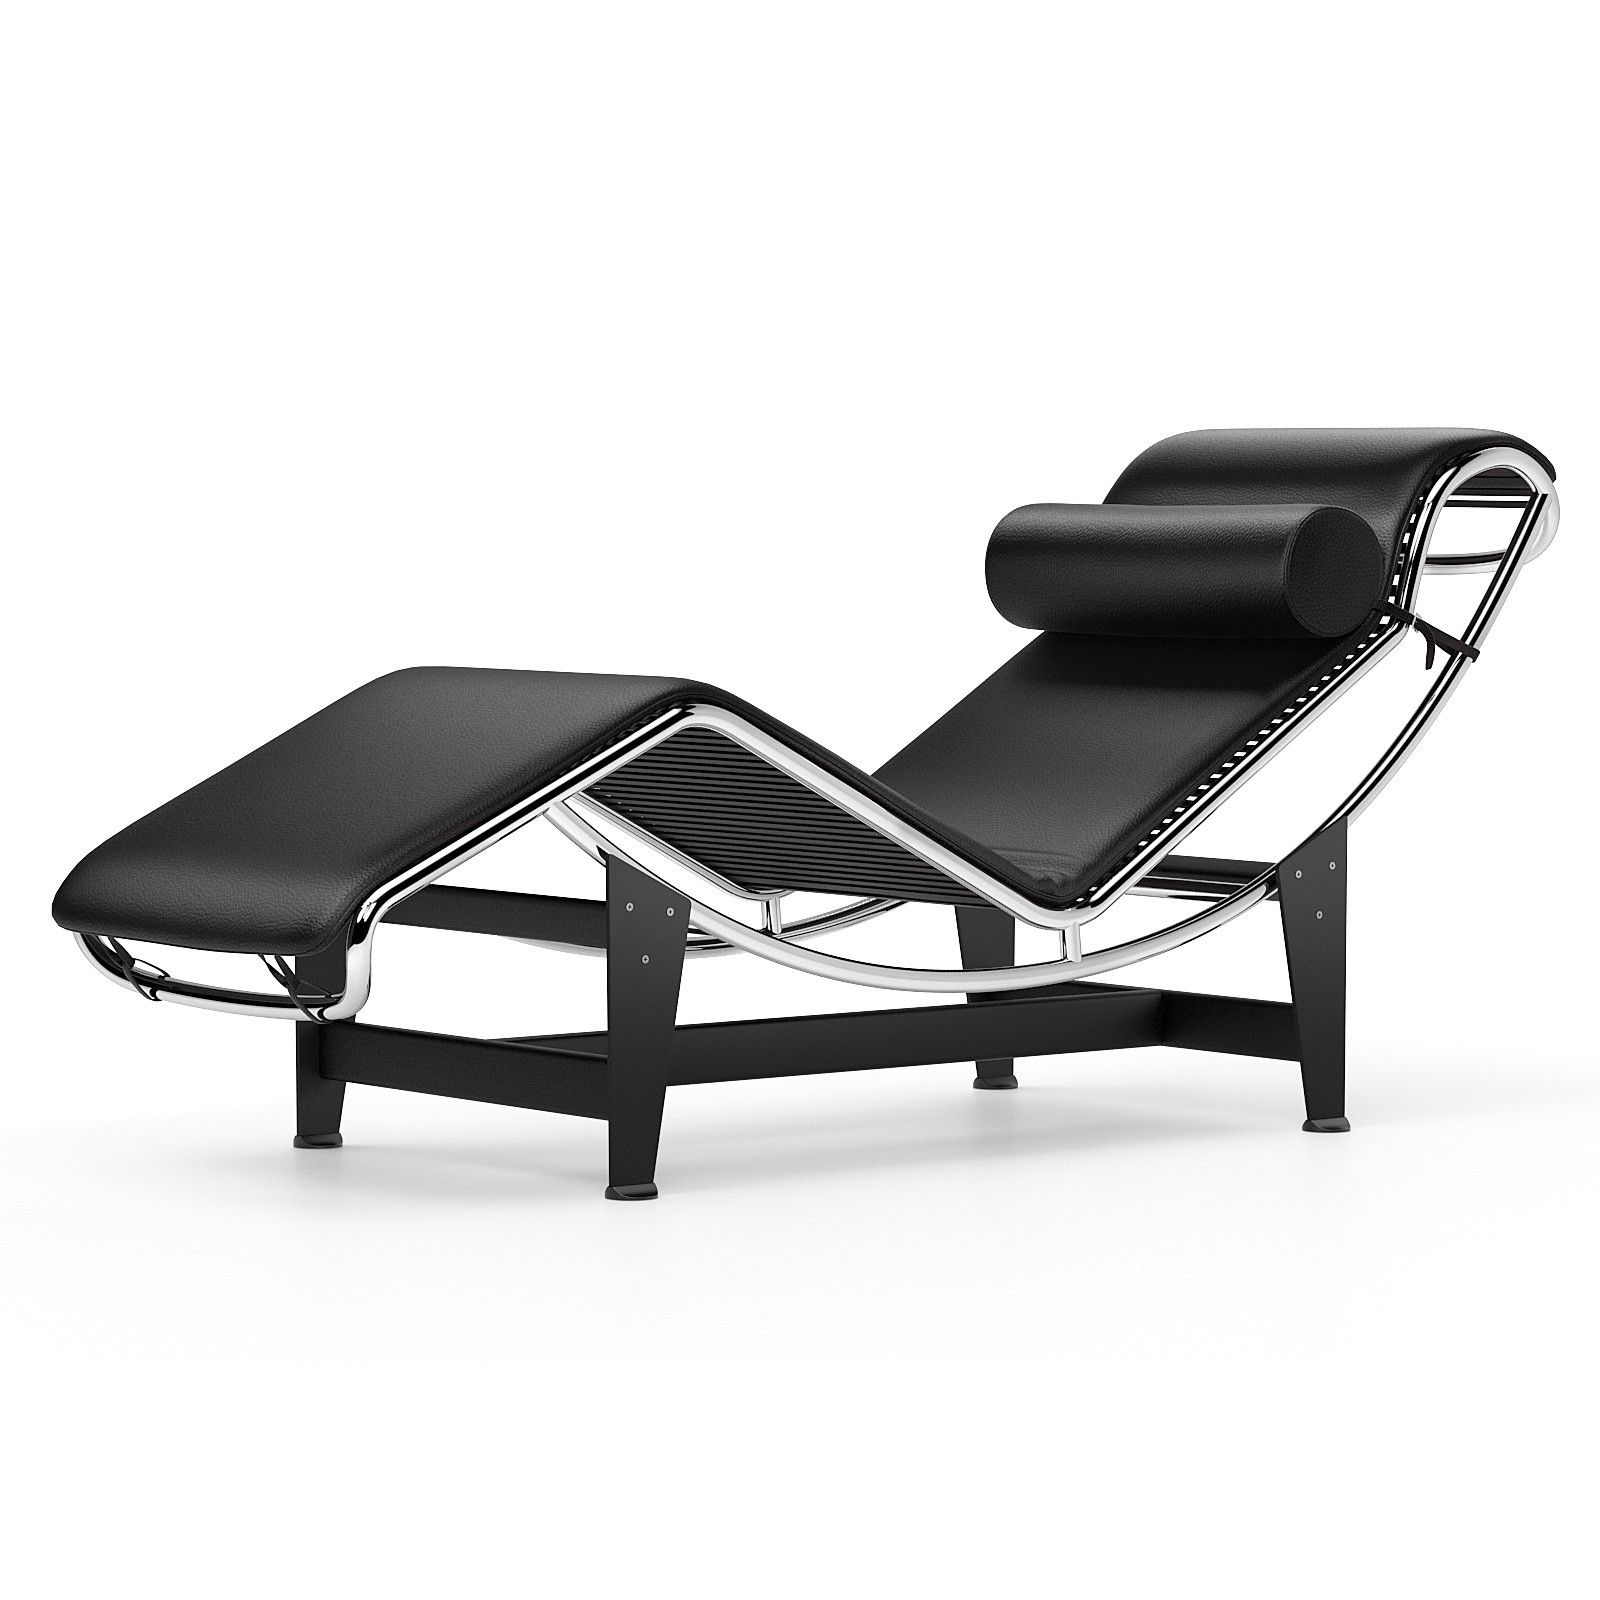 2018 Chaise Longue Le Corbusier Lc4 Chaise Longue Black With Le Corbusier Chaises (View 5 of 15)